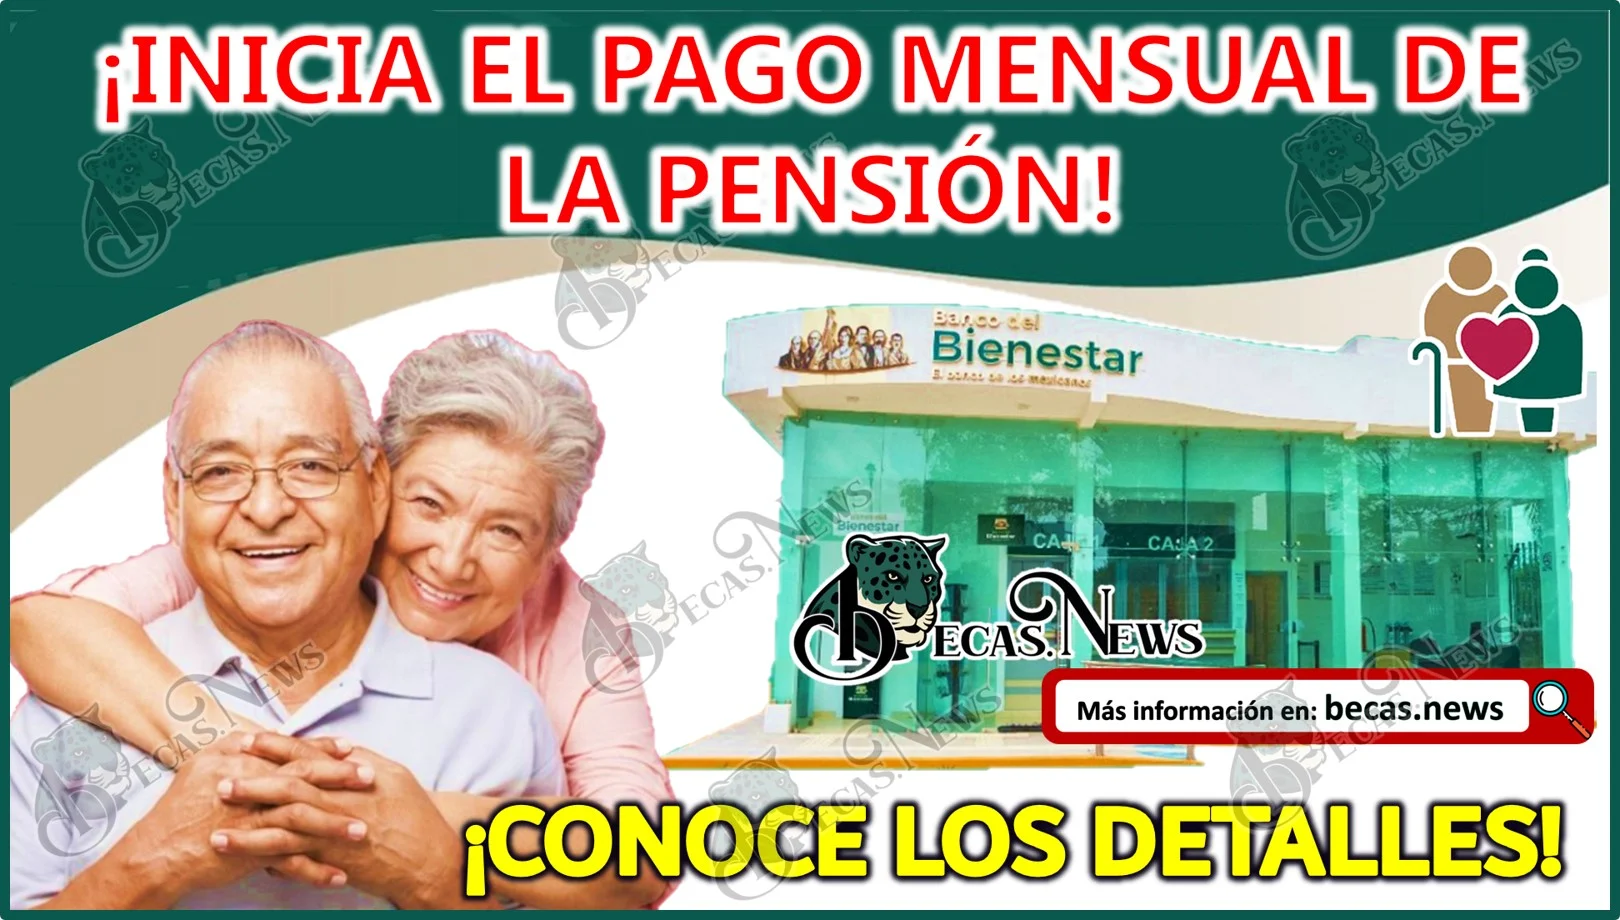 Con la inauguración de las mas de 2 mil sucursales del Banco del Bienestar ¡inicia el pago Mensual de la Pensión!